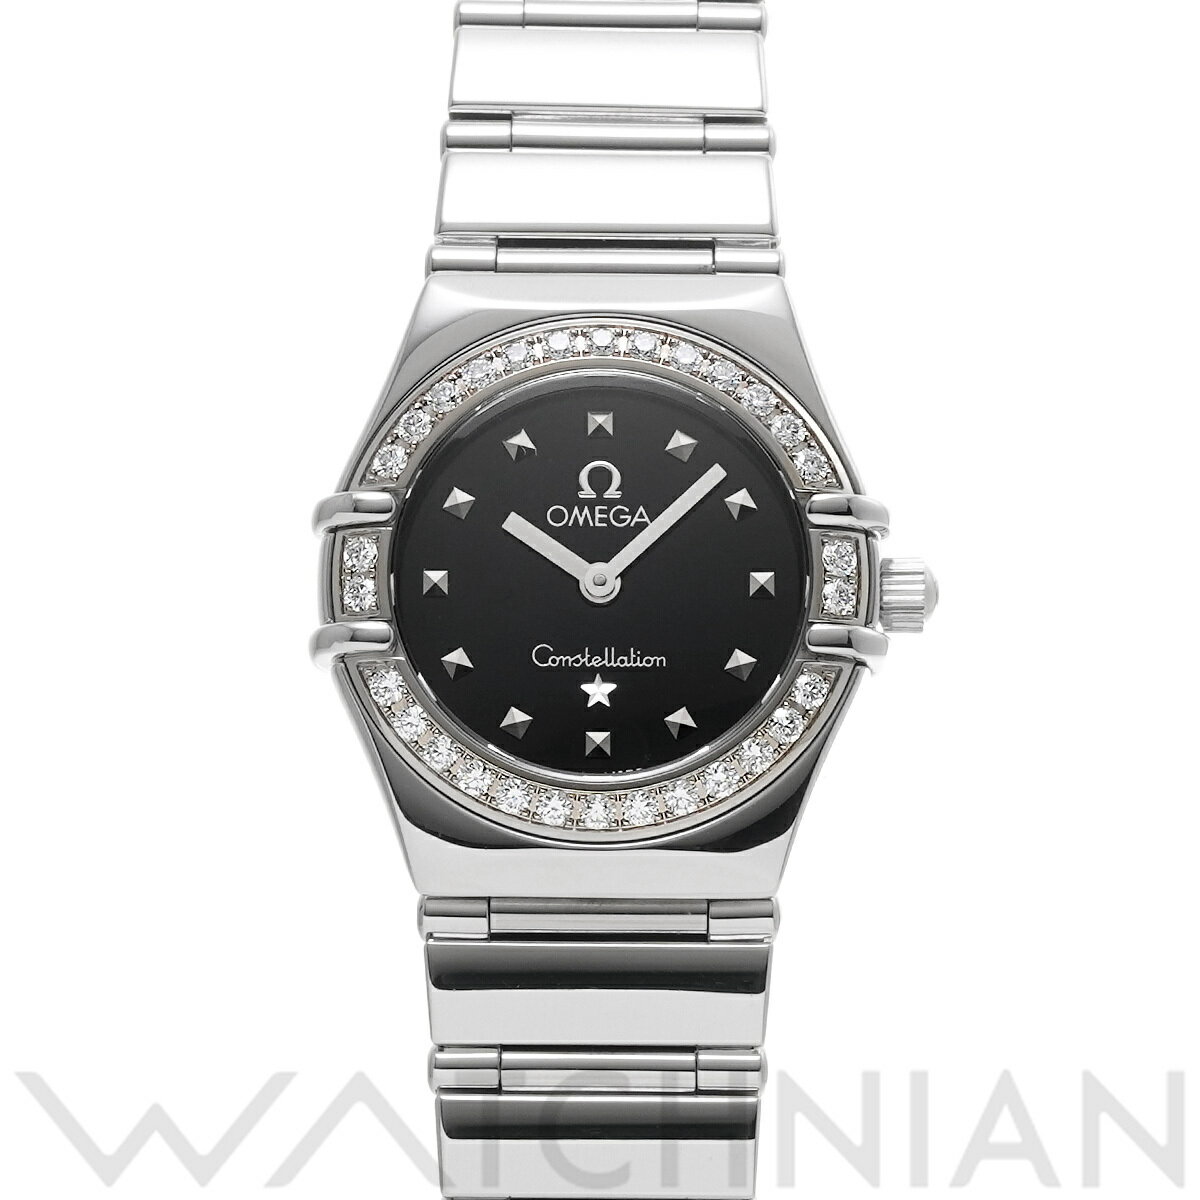 【ローン60回払い無金利】【中古】 オメガ OMEGA コンステレーション ミニ マイチョイス 1465.51 ブラック レディース 腕時計 オメガ 時計 高級腕時計 ブランド